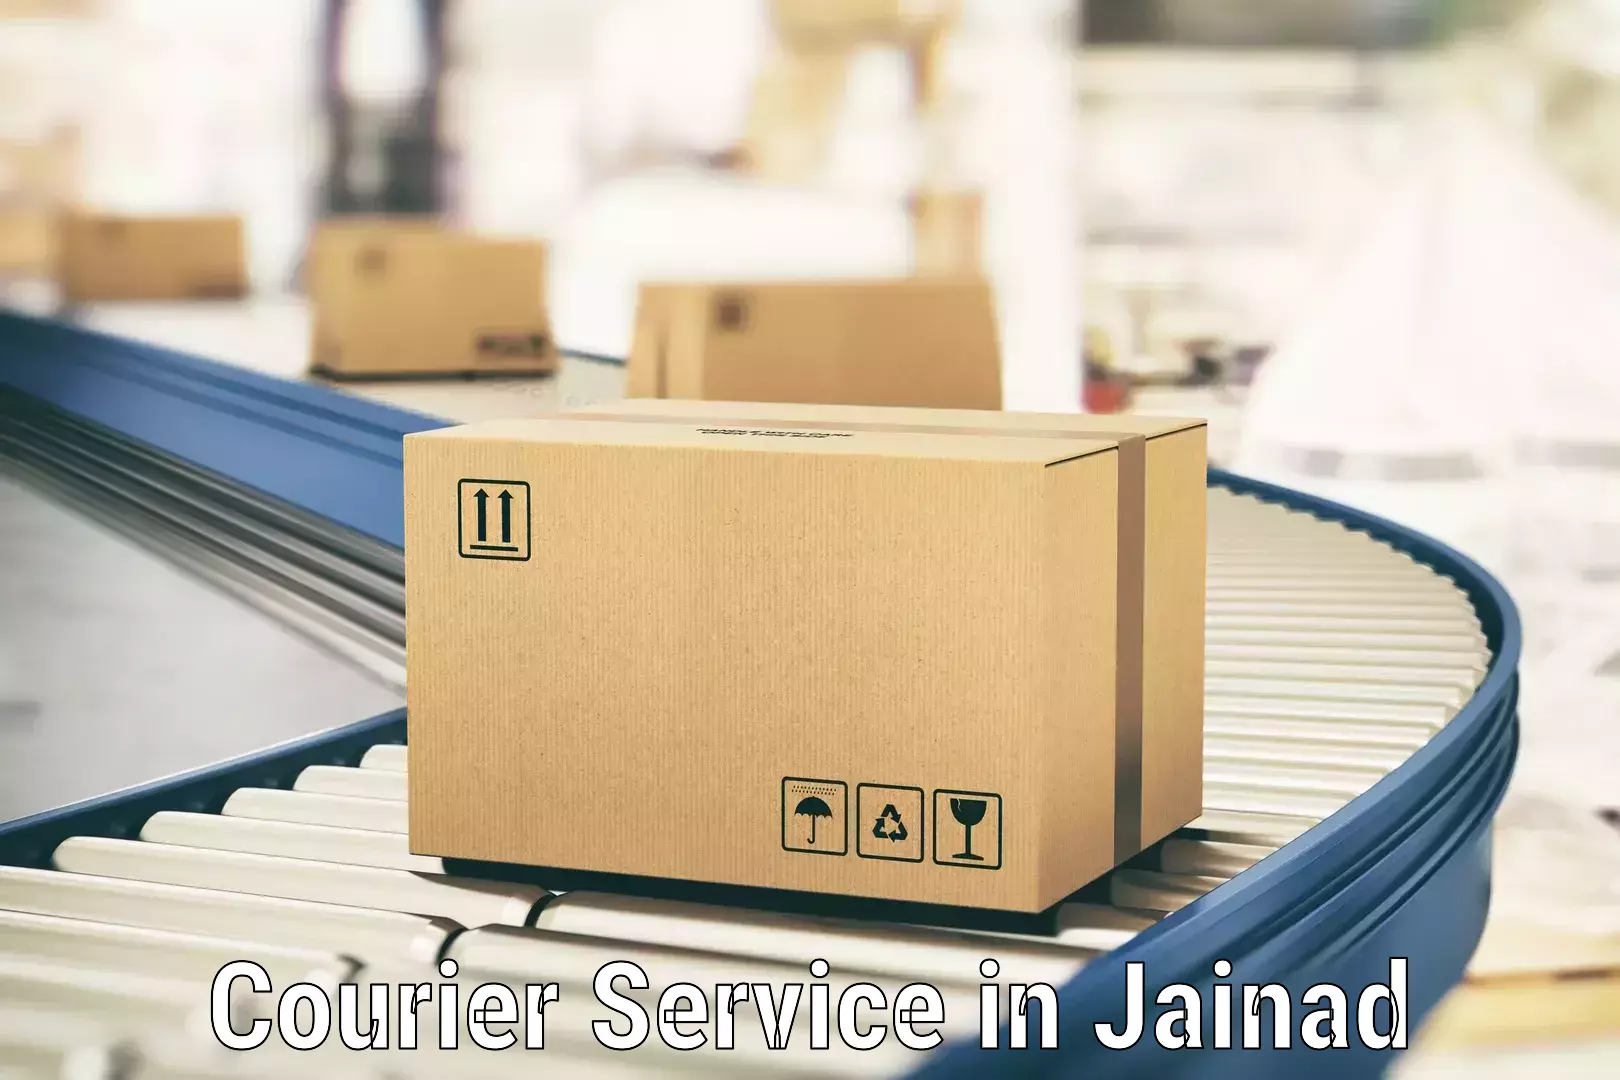 Express package handling in Jainad